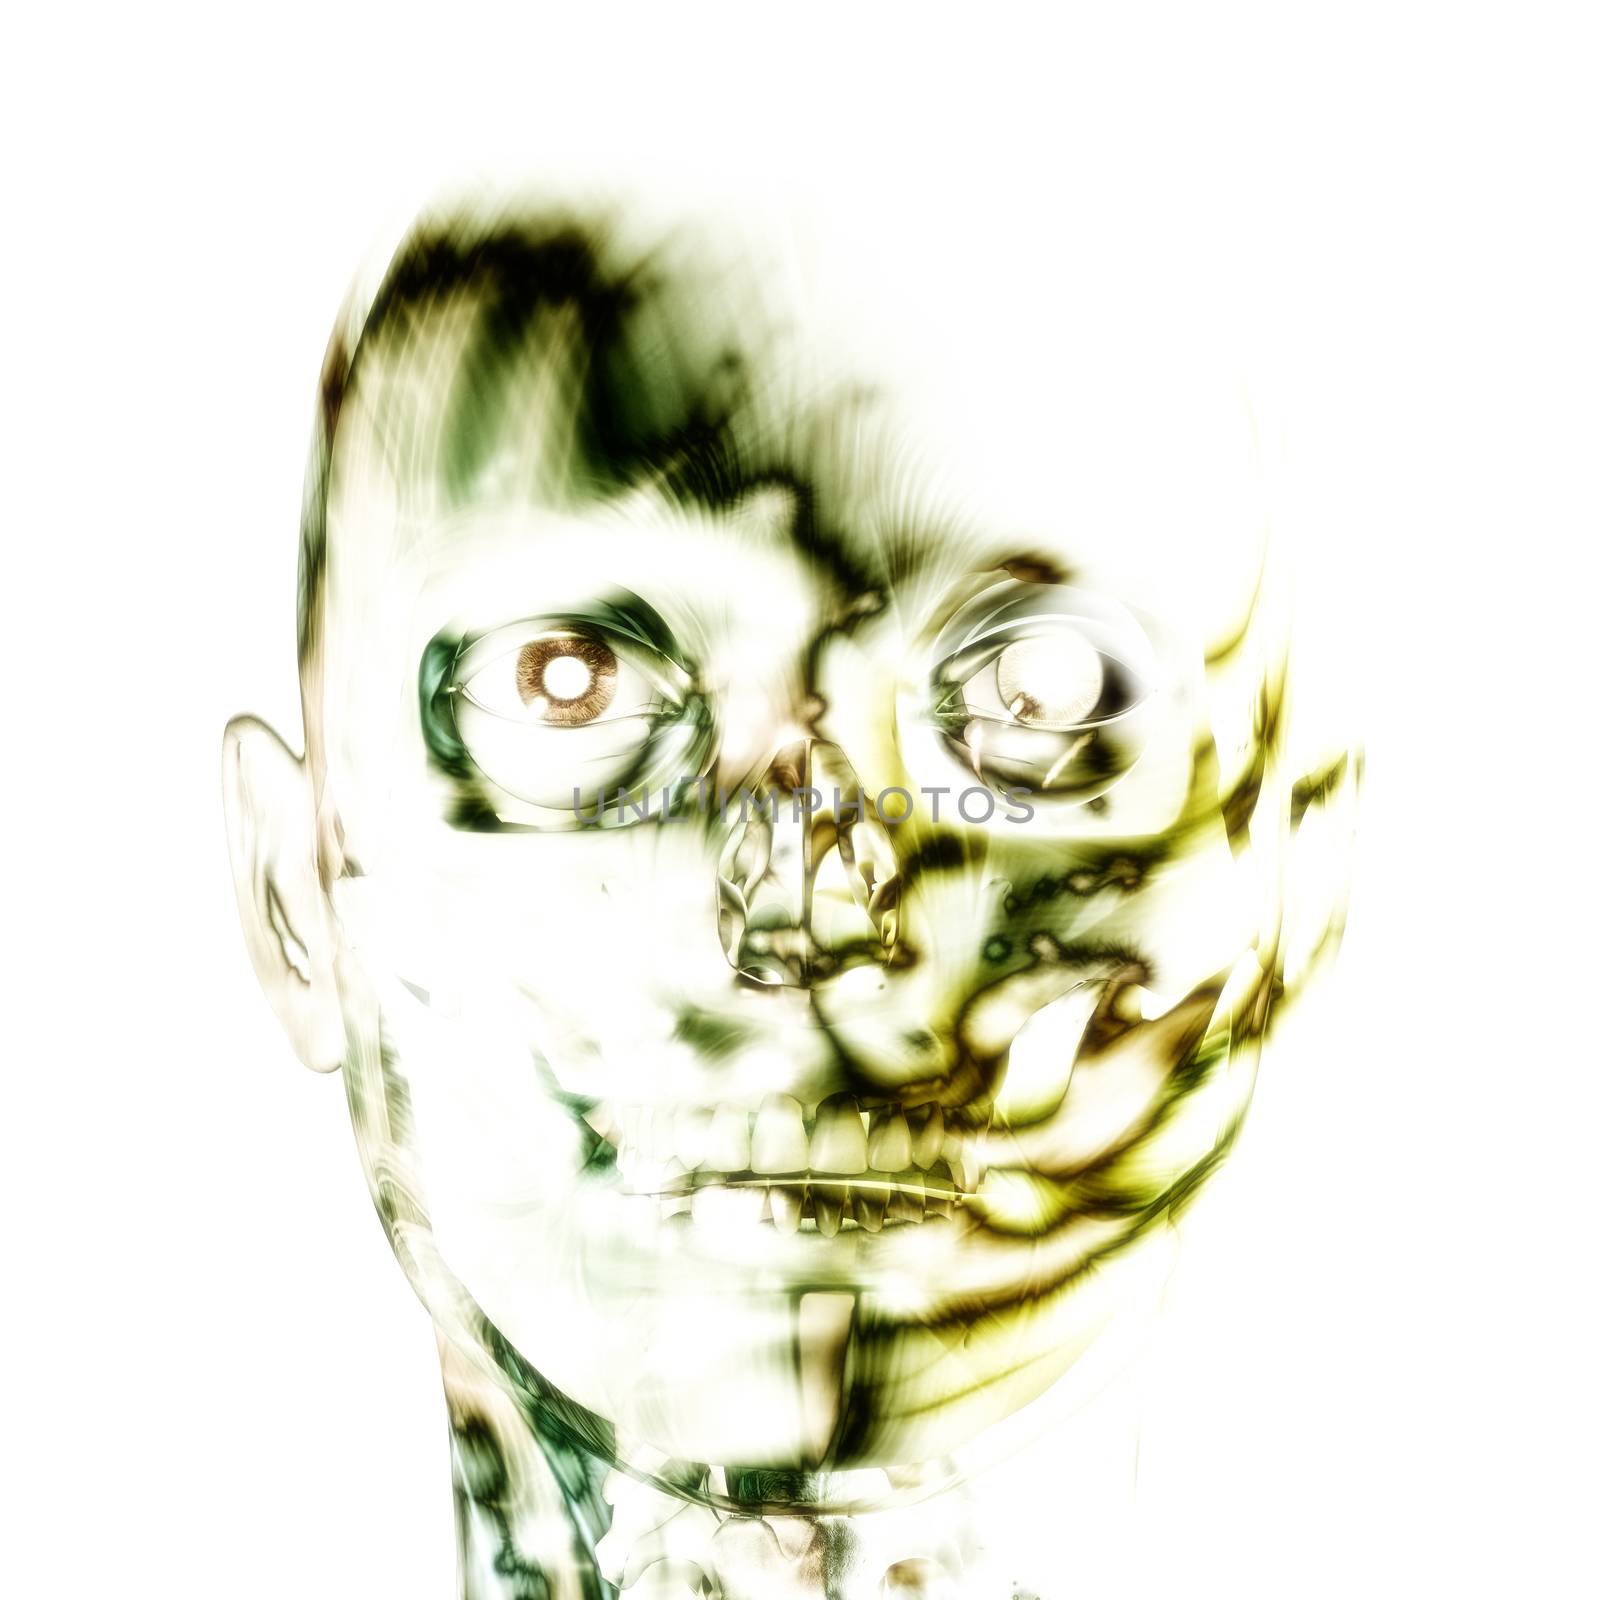 3D illustration, 3d Rendering of a human Skull